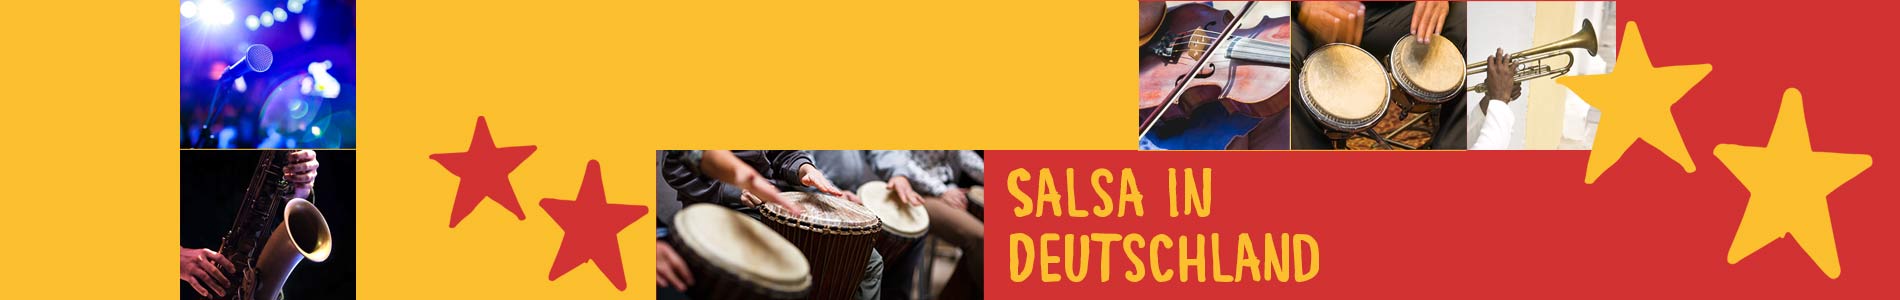 Salsa in Bramstedt – Salsa lernen und tanzen, Tanzkurse, Partys, Veranstaltungen